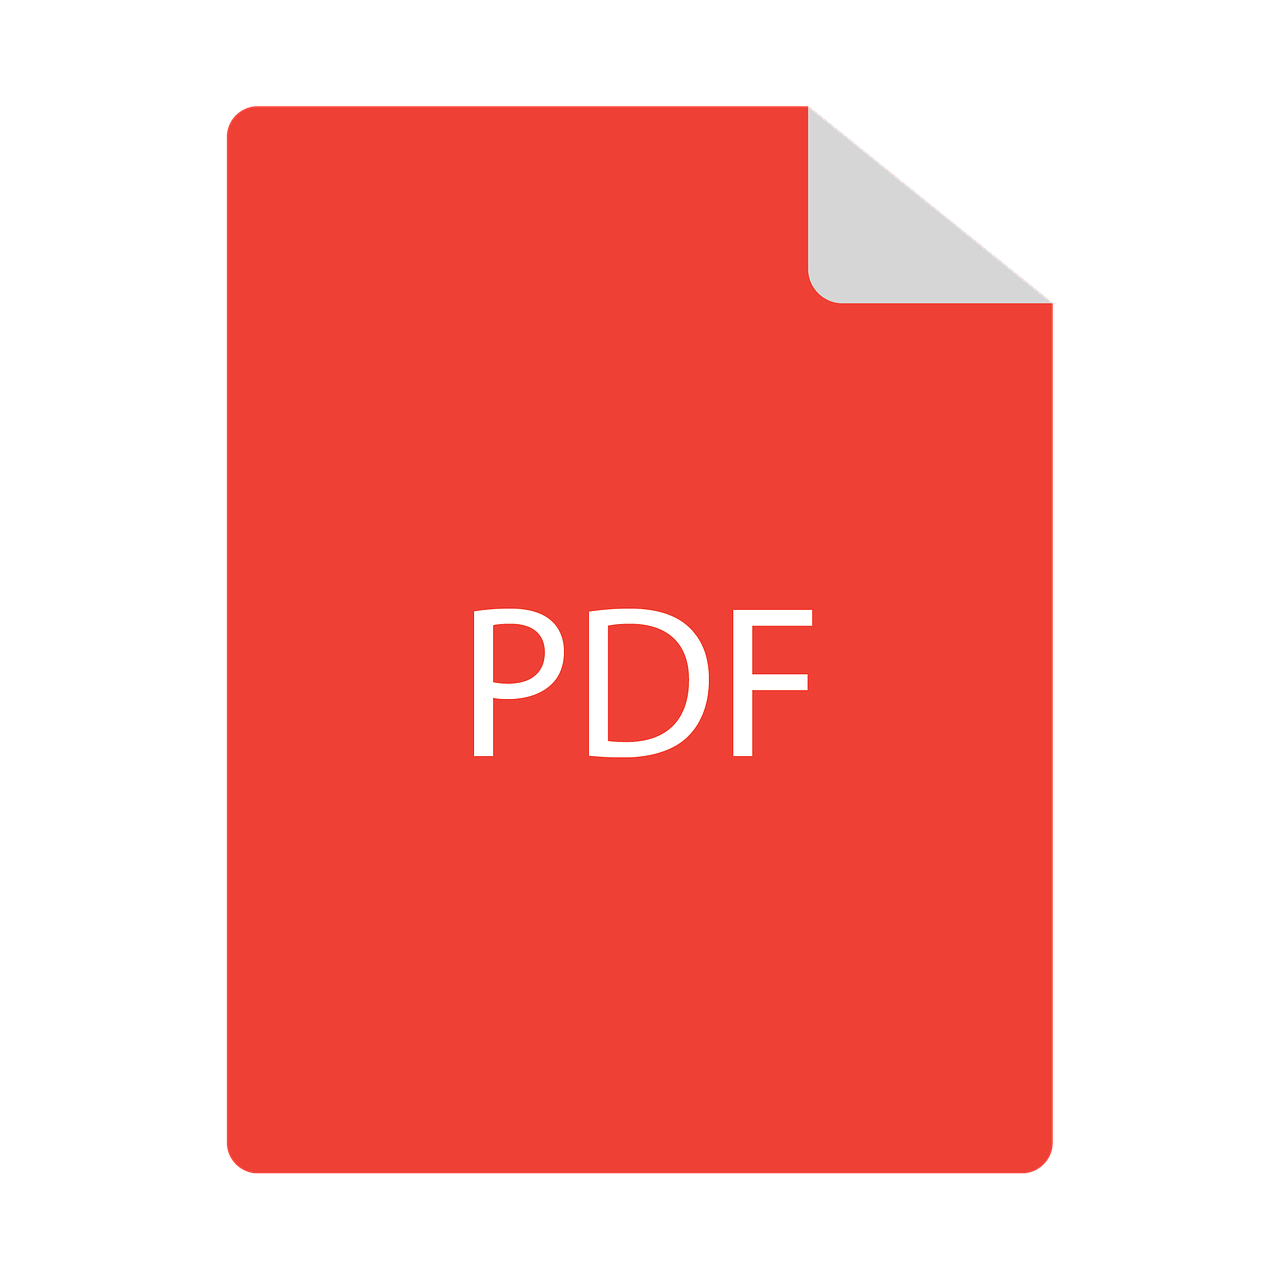 PDF en PNG : 6 façons gratuites de convertir le PDF en PNG